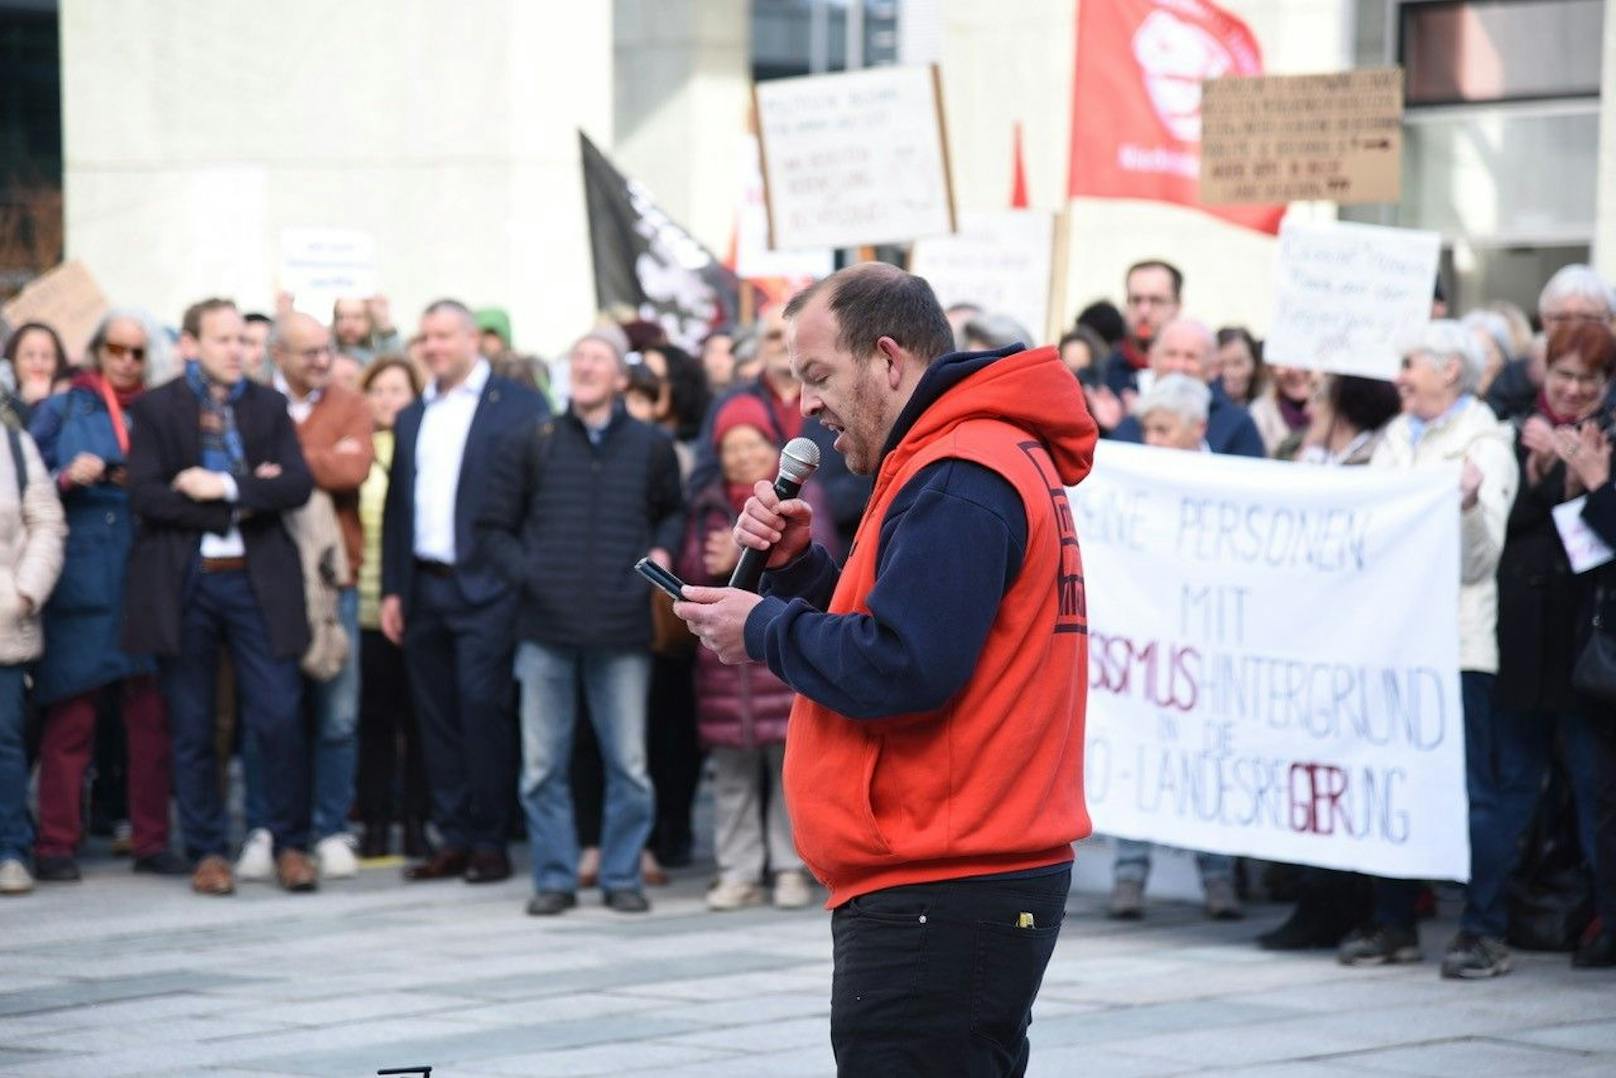 St. Pölten: Hitzige Demo vor der Landtagssitzung und der Angelobung von Mikl-Leitner (VP) und Landbauer (FP)